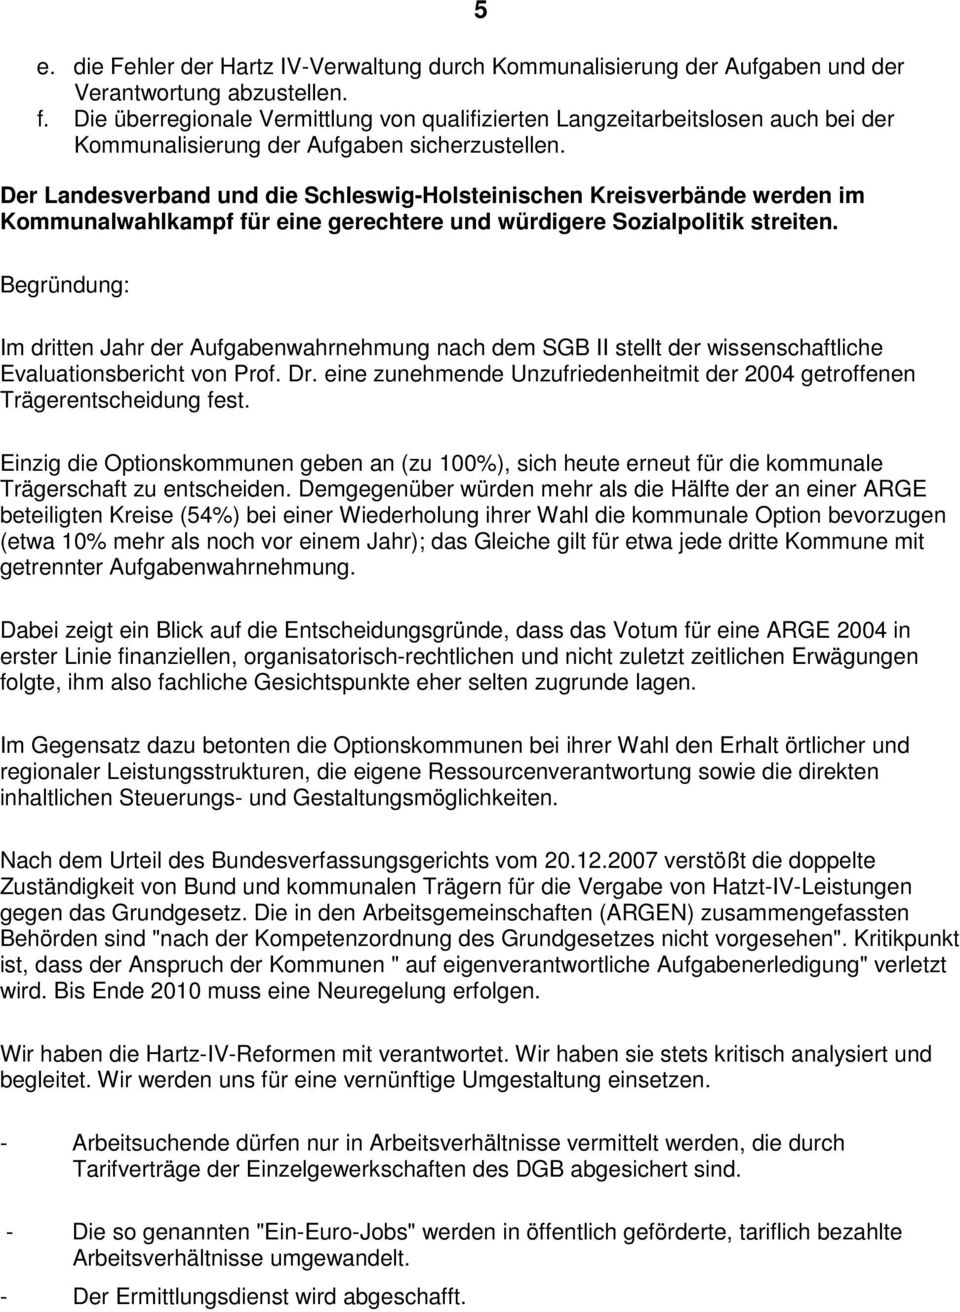 Der Landesverband und die Schleswig-Holsteinischen Kreisverbände werden im Kommunalwahlkampf für eine gerechtere und würdigere Sozialpolitik streiten.